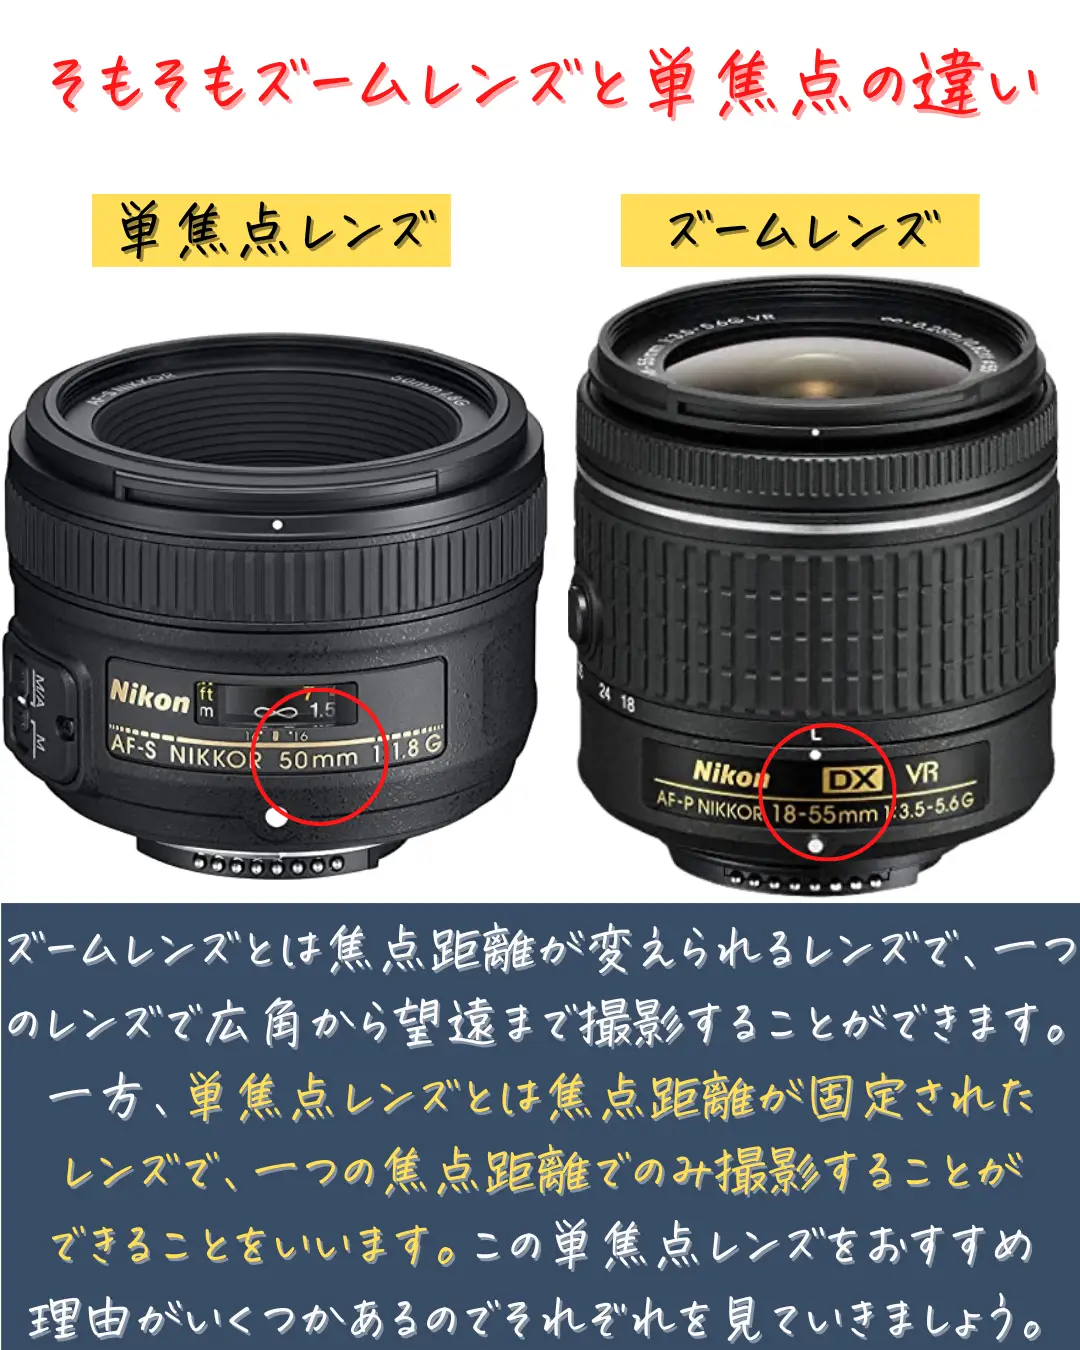 Nikon D5300 Nikon 35mm単焦点レンズ タムロン ズームレンズ - カメラ